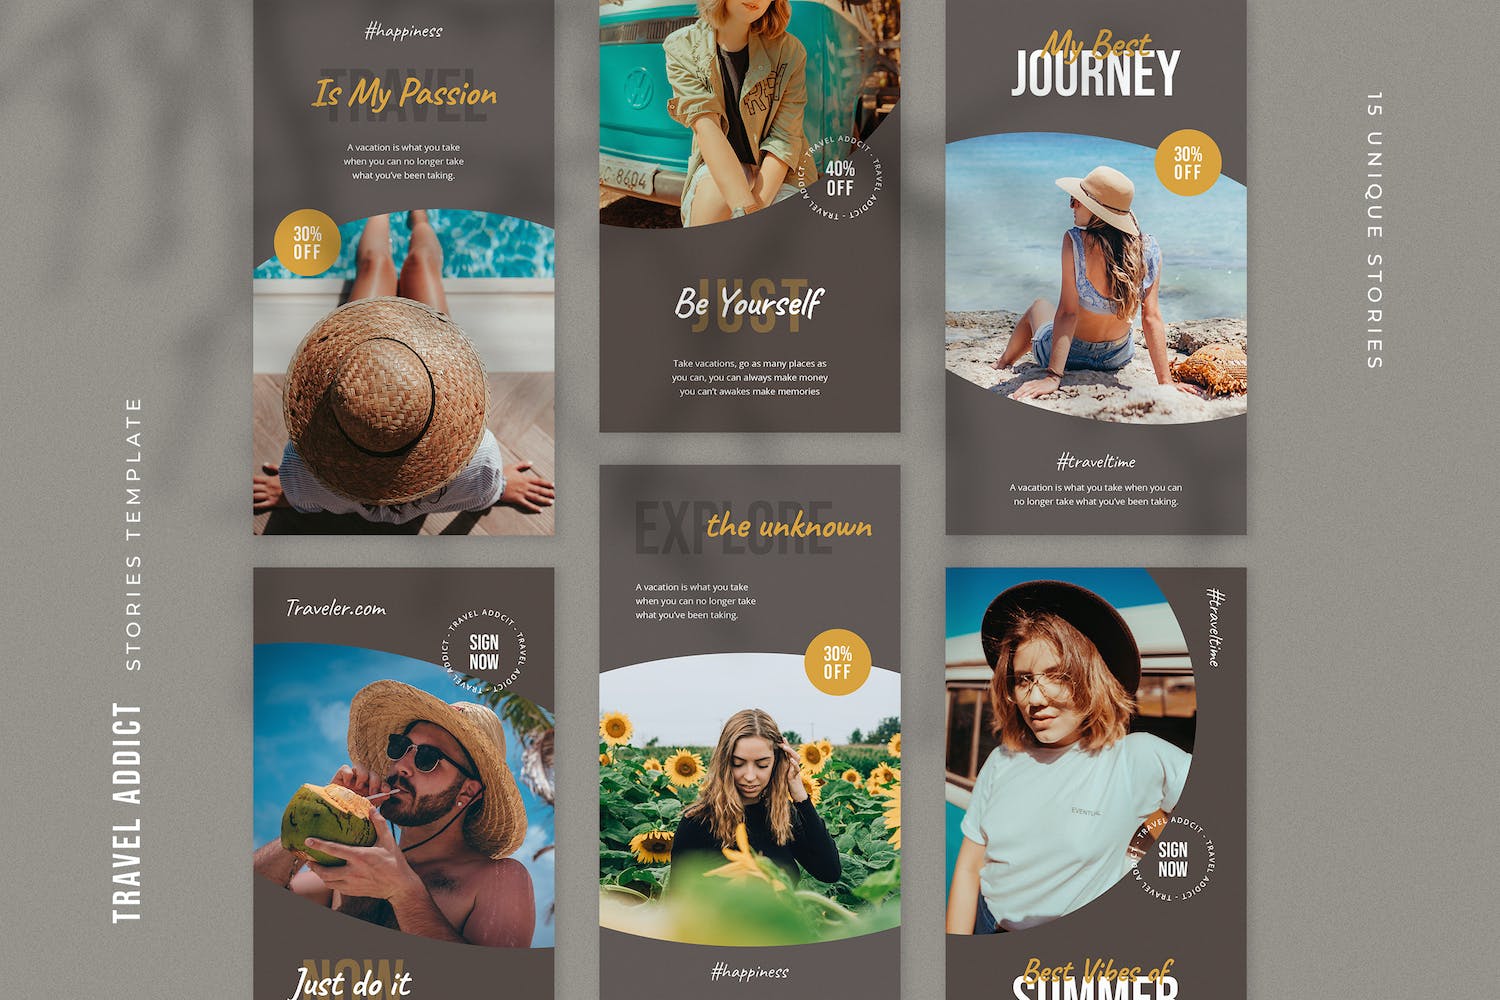 夏日 旅行 主题 社交媒体Instagram故事模板 Travel Instagram Stories Template设计素材模板